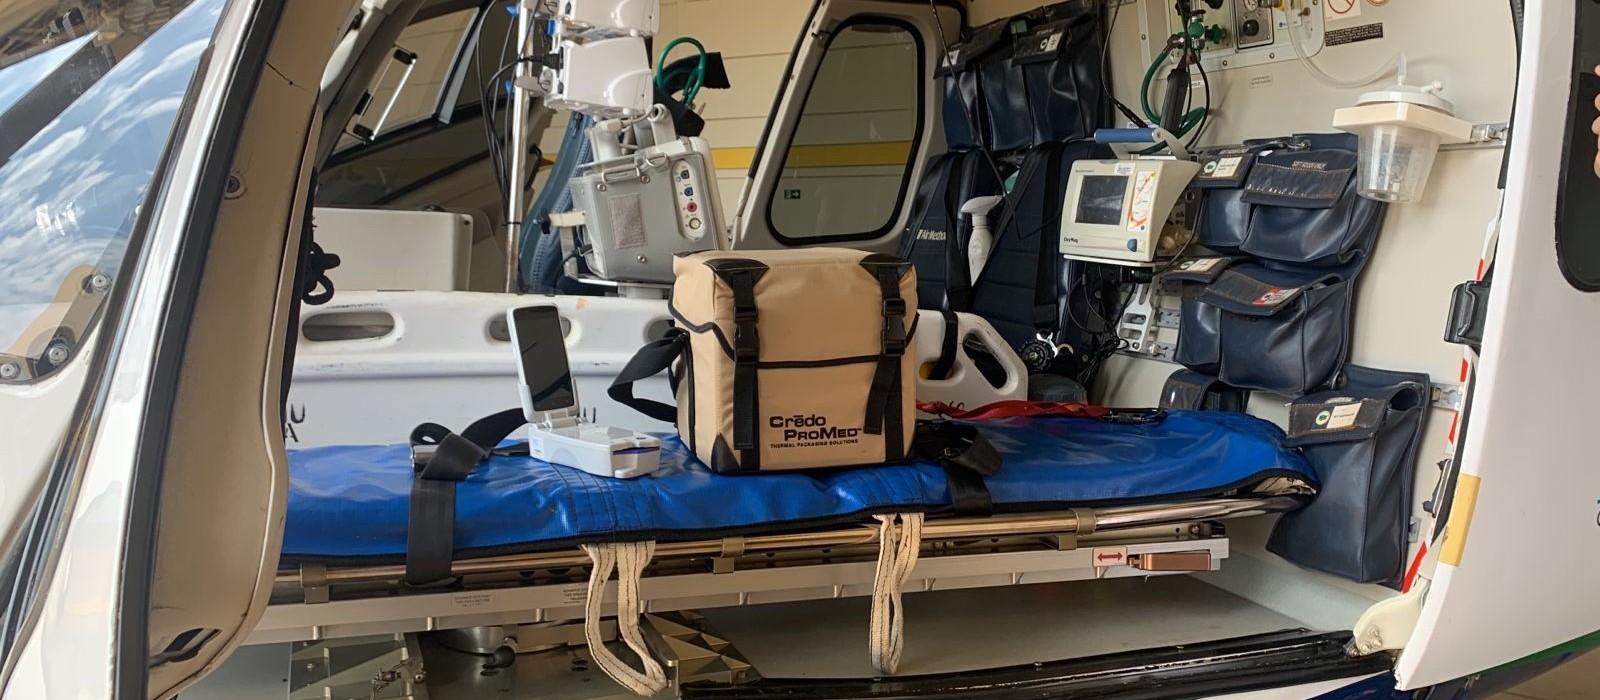 Samu aéreo começa a transportar bolsas de sangue para transfusão durante atendimentos